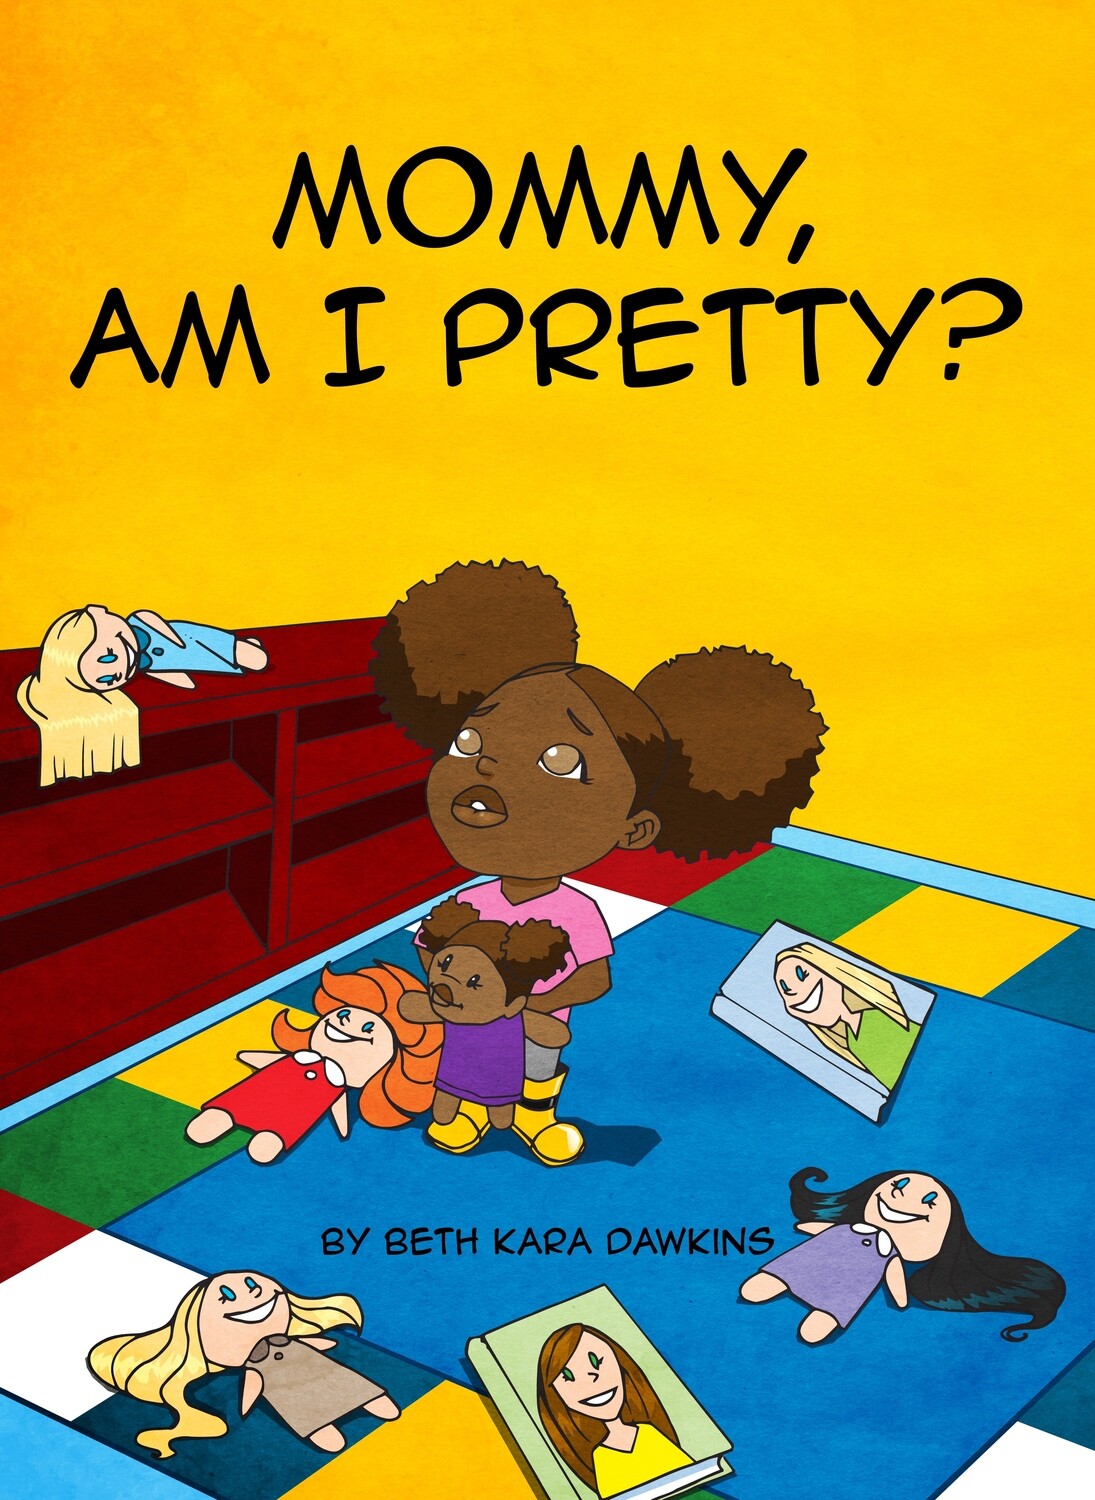 Beth K. Dawkins’s Book: Mommy, Am I Pretty?